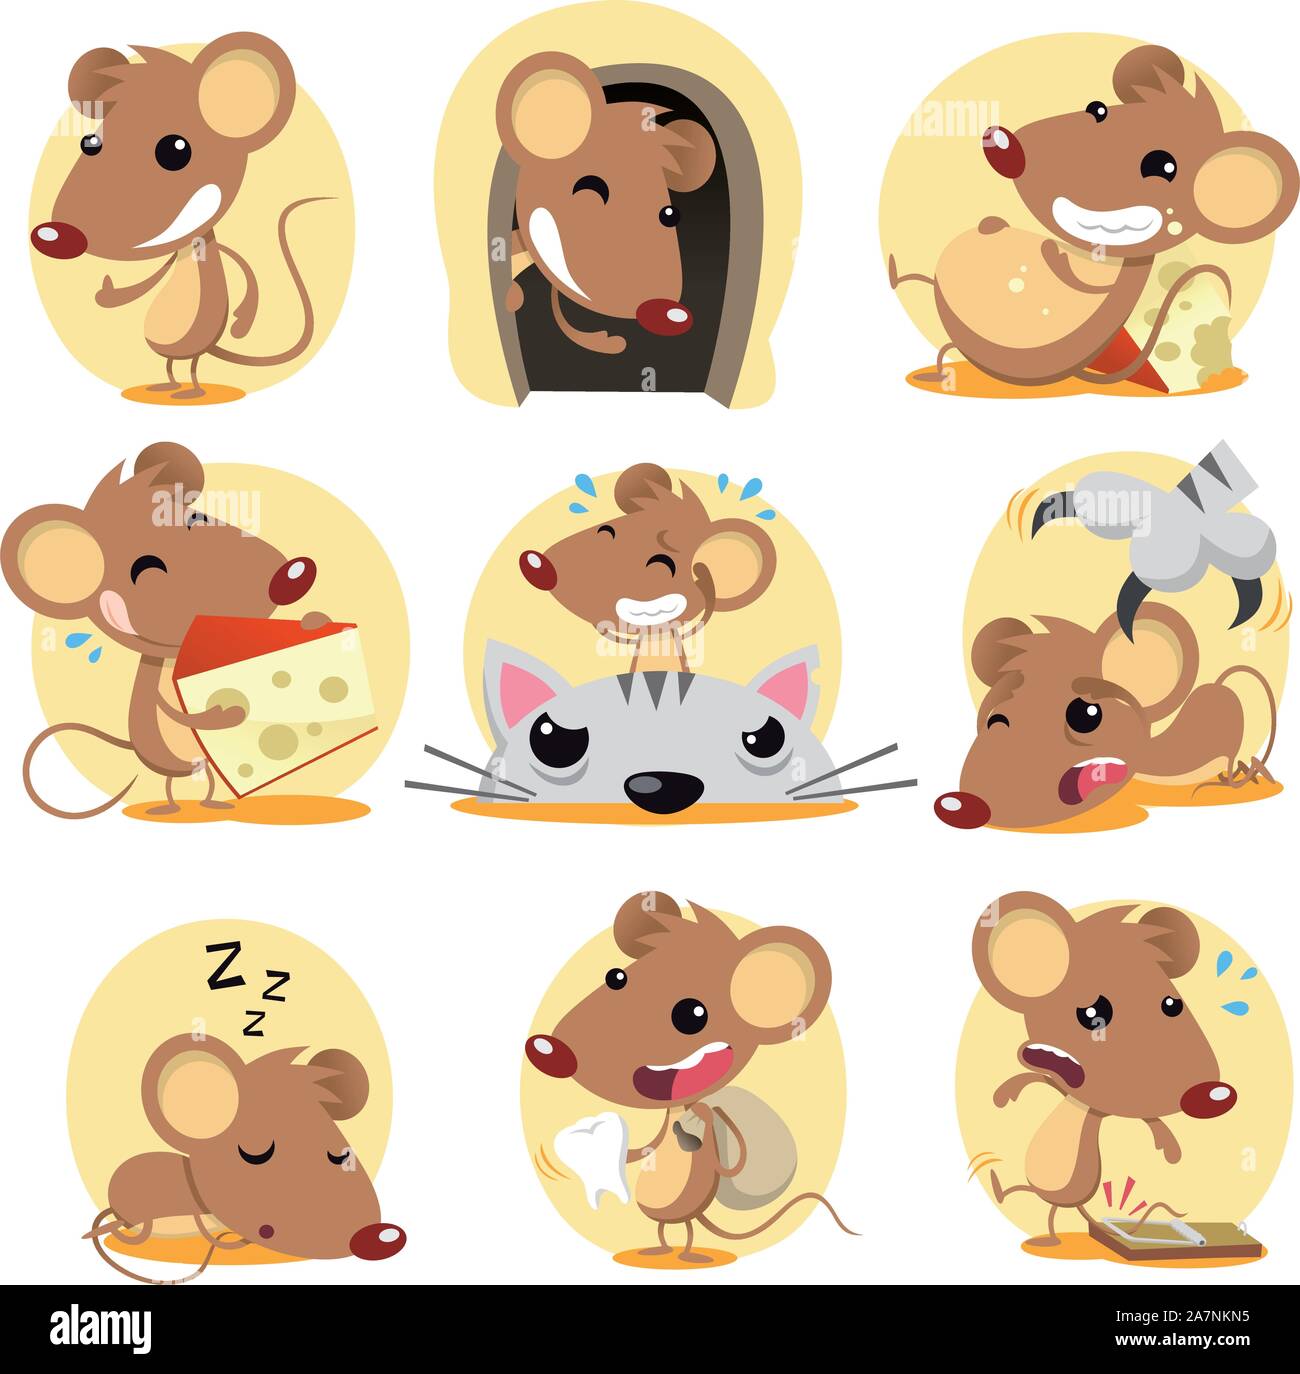 Süße braune Maus-Cartoon in Aktion gesetzt, mit neun verschiedenen Ratten in verschiedenen Situationen wie: stehend zuversichtlich, versteckt in seinem Loch, ruht auf Chee Stock Vektor